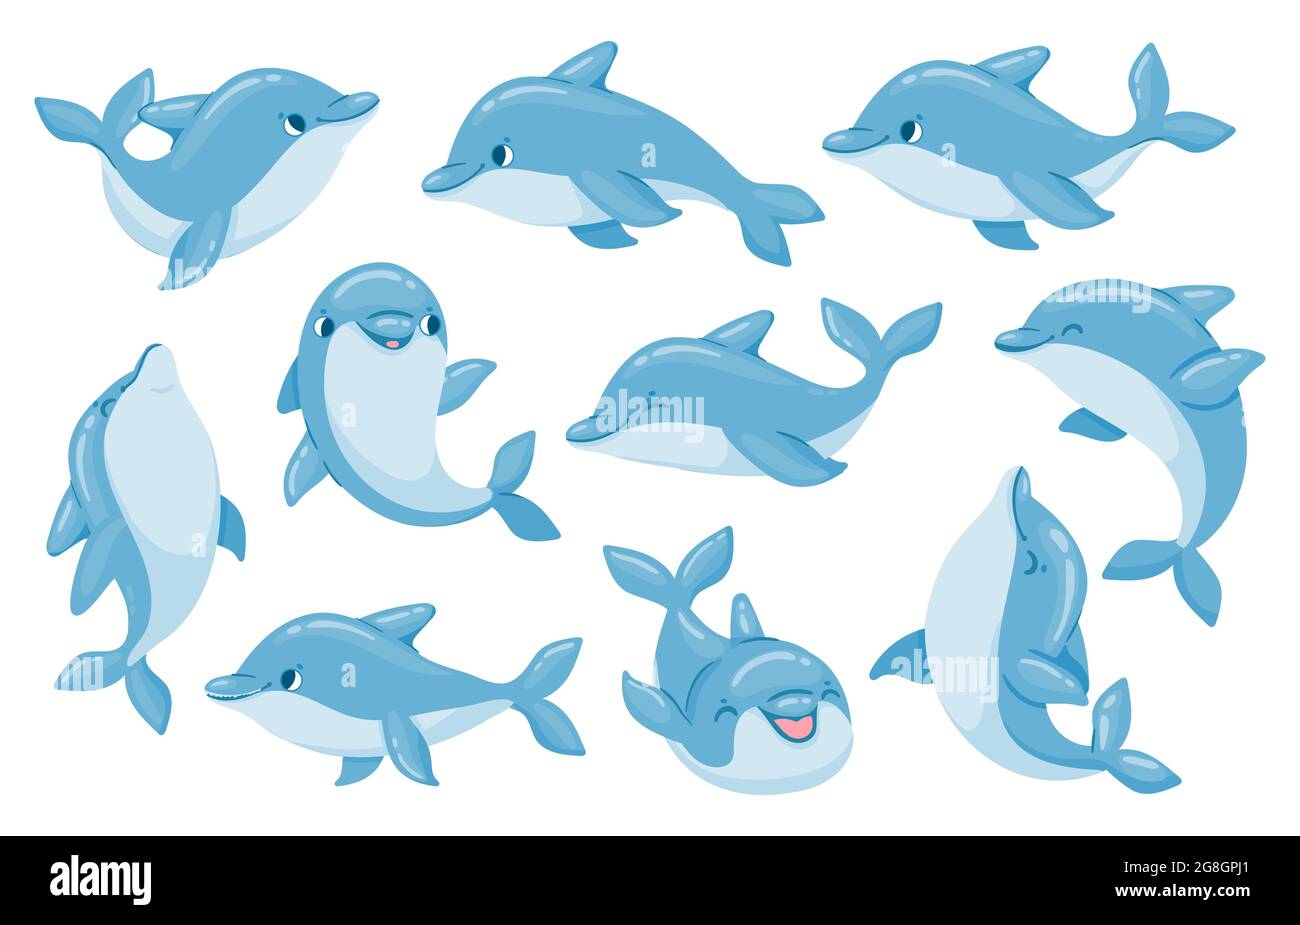 Delphin-Figuren. Lustige Delfine springen und schwimmen Posen. Ozeanarium Show Maskottchen Unterwasser Tier. Cartoon große Tümmler Baby Delphin Vektor-Set Stock Vektor